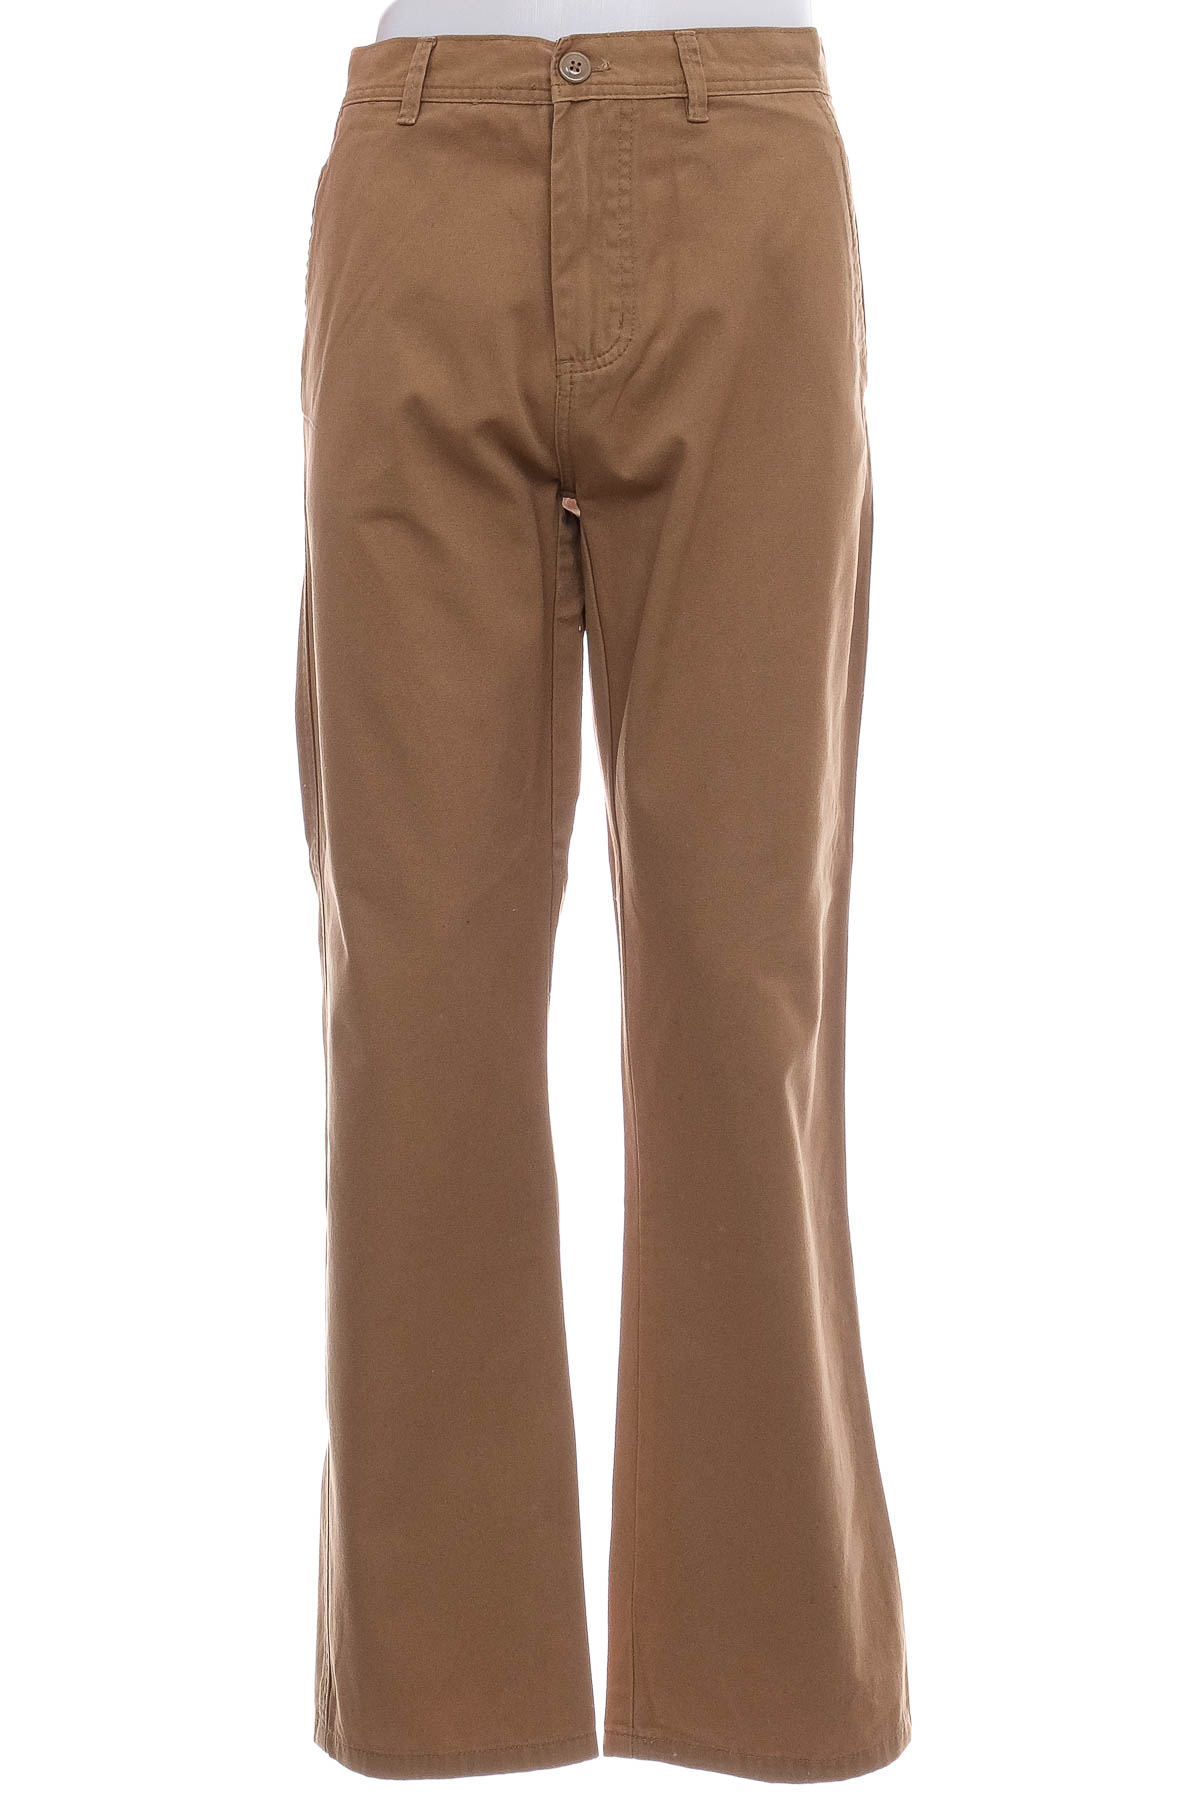 Pantalon pentru bărbați - Denim Co. - 0